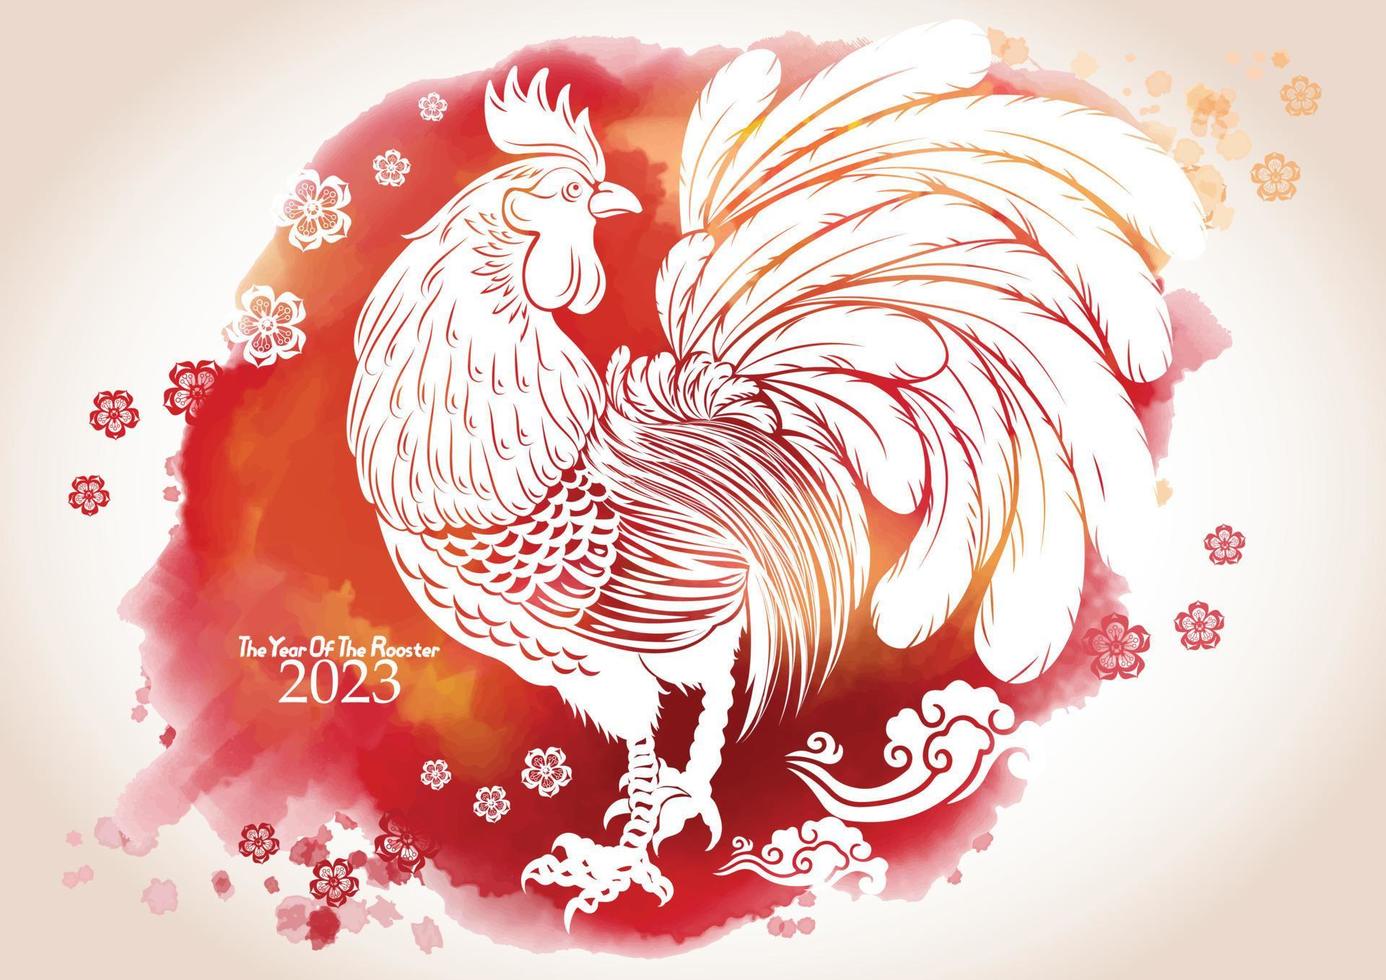 Tarjeta de felicitación de año nuevo chino 2023 con fondo de salpicaduras de acuarela. ilustración vectorial vector